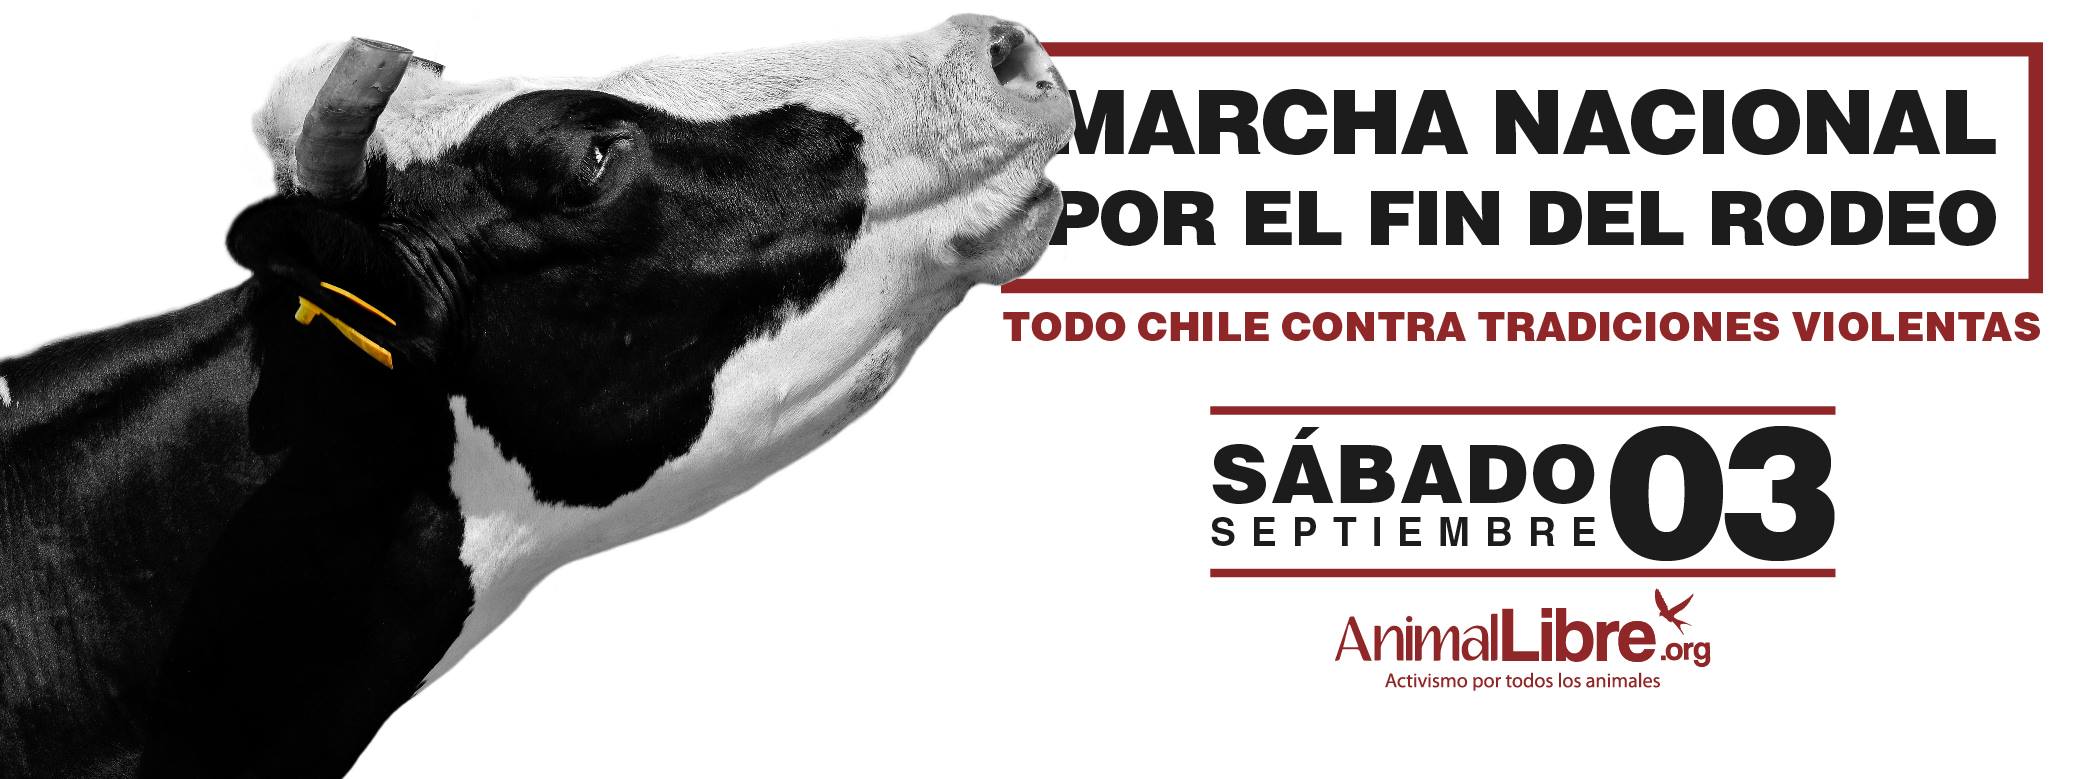 Convocan a Marcha Nacional por el Fin del Rodeo en Chile